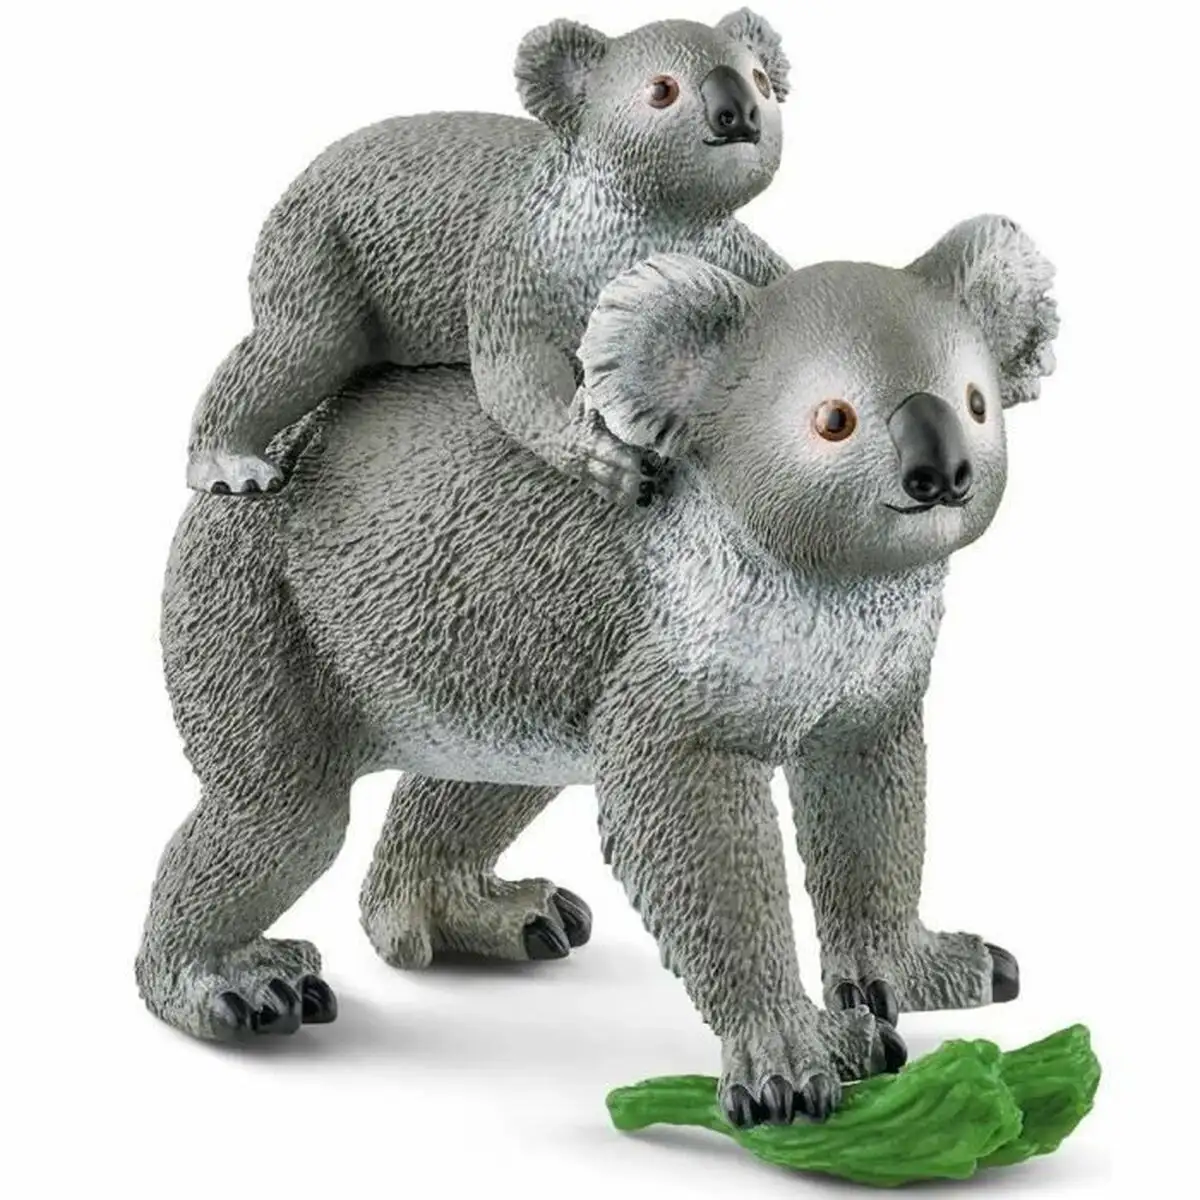 Set animaux sauvages schleich koala reconditionne d _8025. DIAYTAR SENEGAL - Votre Destination Shopping Inspirante. Explorez notre catalogue pour trouver des articles qui stimulent votre créativité et votre style de vie.